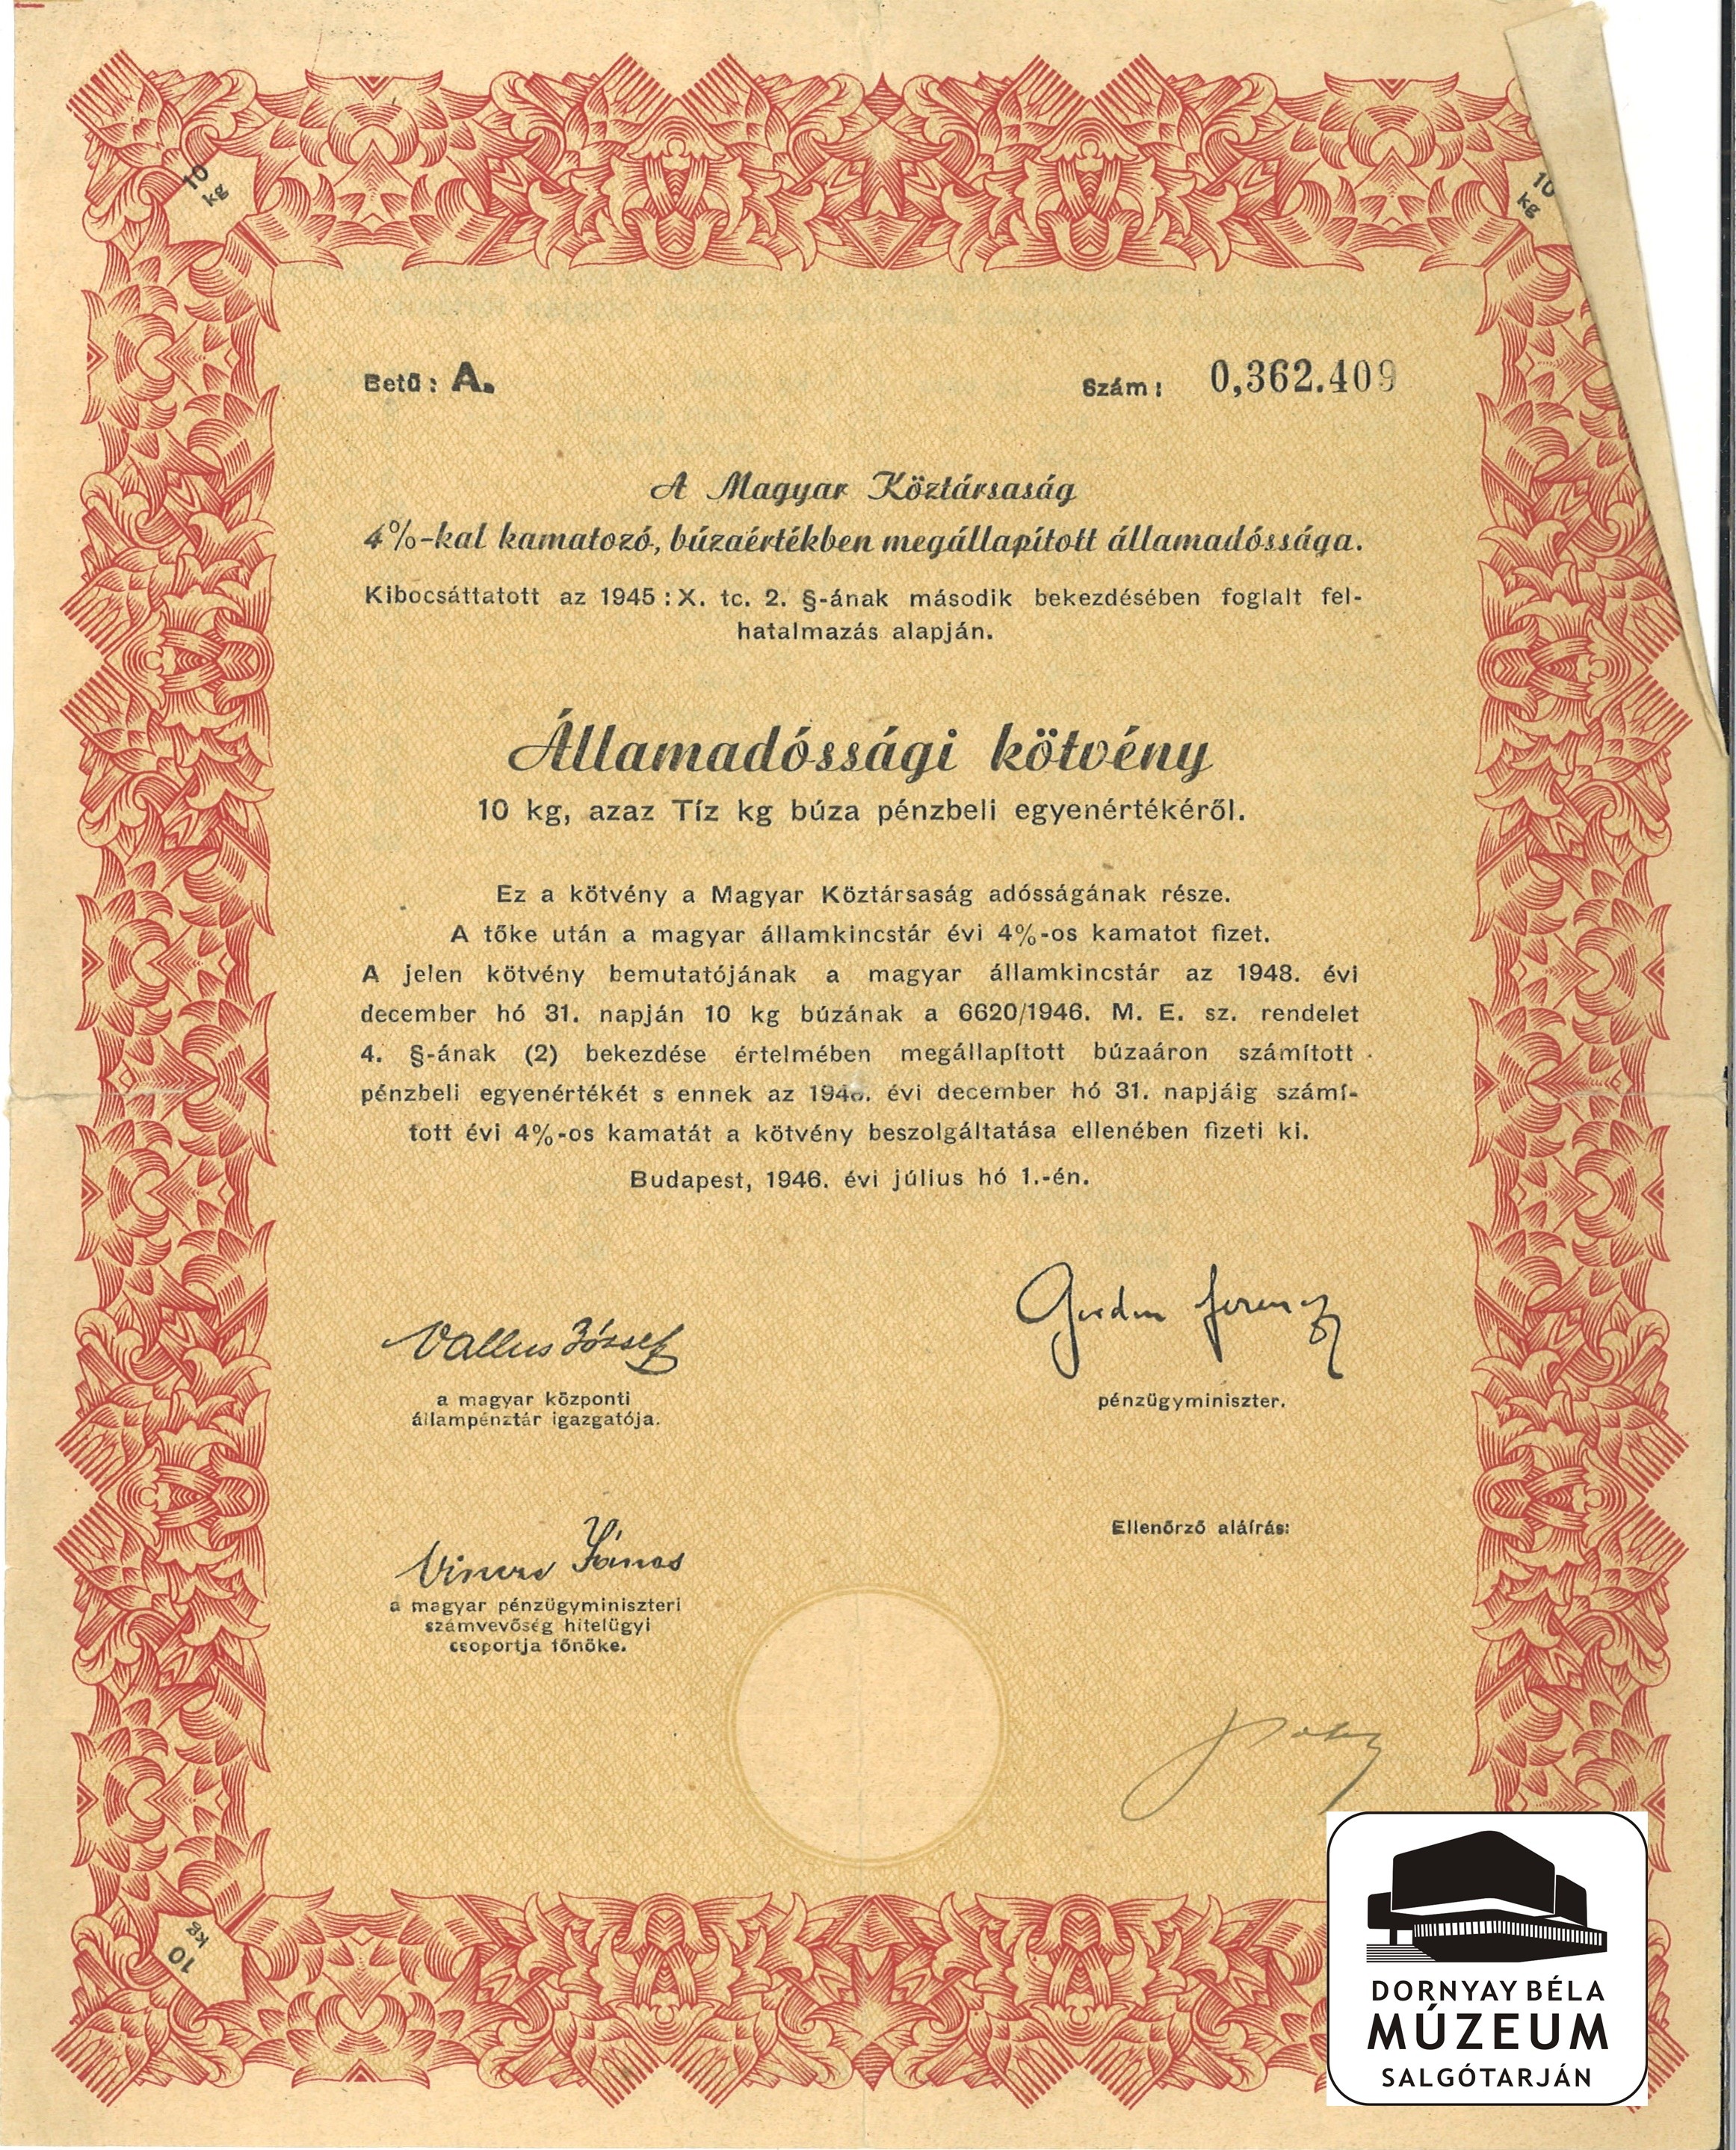 A Magyar Köztársaság államadóssági kötvénye (Dornyay Béla Múzeum, Salgótarján CC BY-NC-SA)